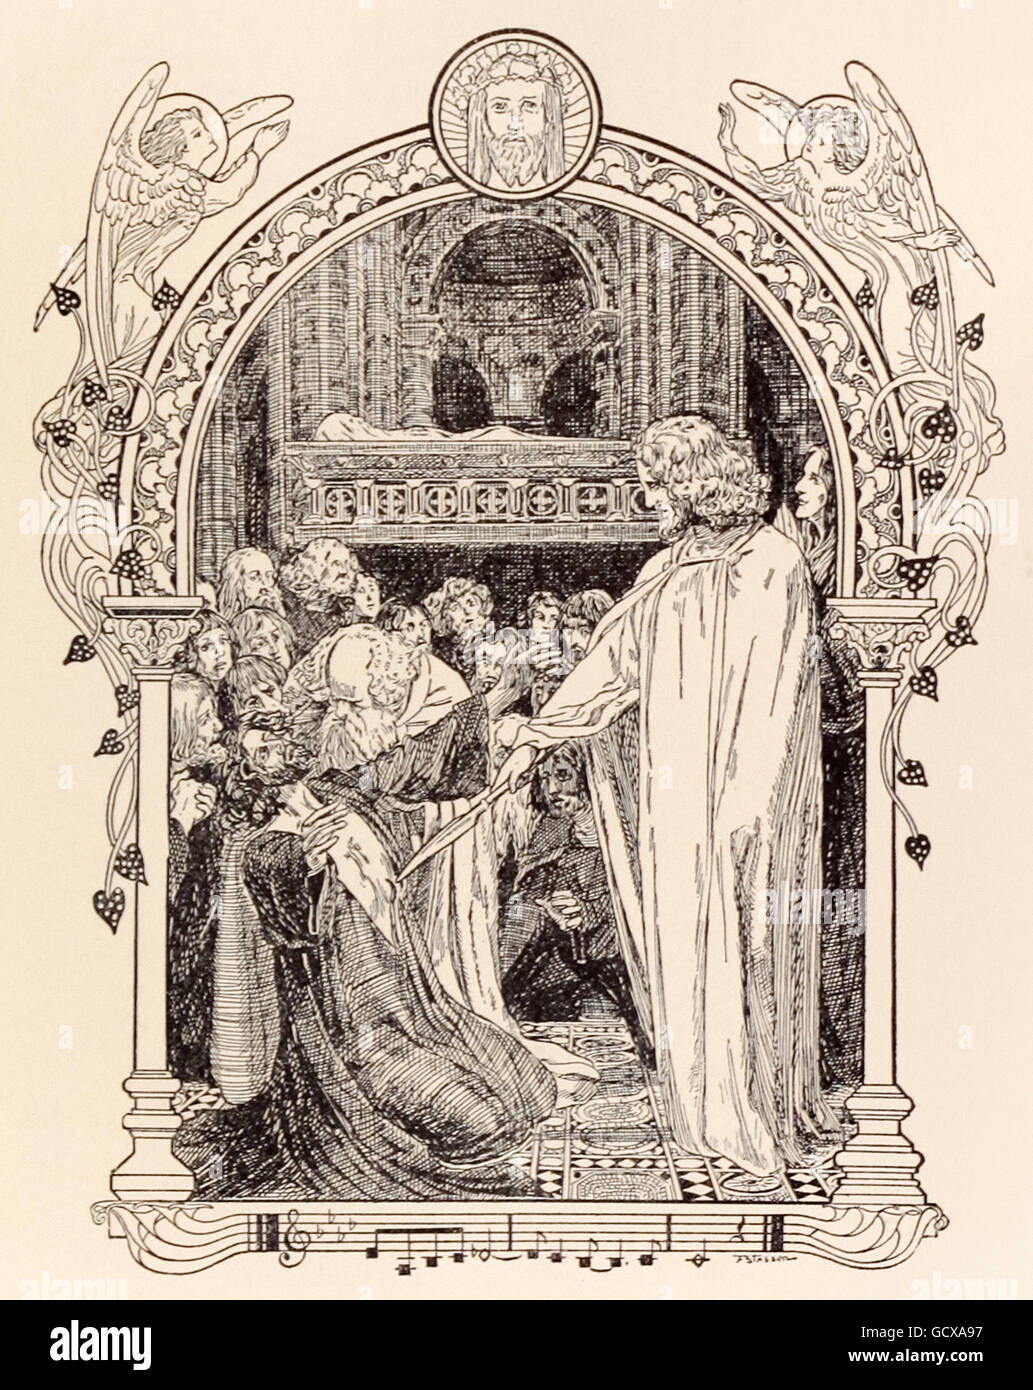 "Parsifal Roi Amfortas de guérison." Franz Stassen (1869-1949) illustration pour "Parsifal" de Richard Wagner (1813-1883). Acte 3, dans le château du Graal, Amfortas est amené devant le Graal de culte et guéri. Voir la description pour plus d'informations. Banque D'Images